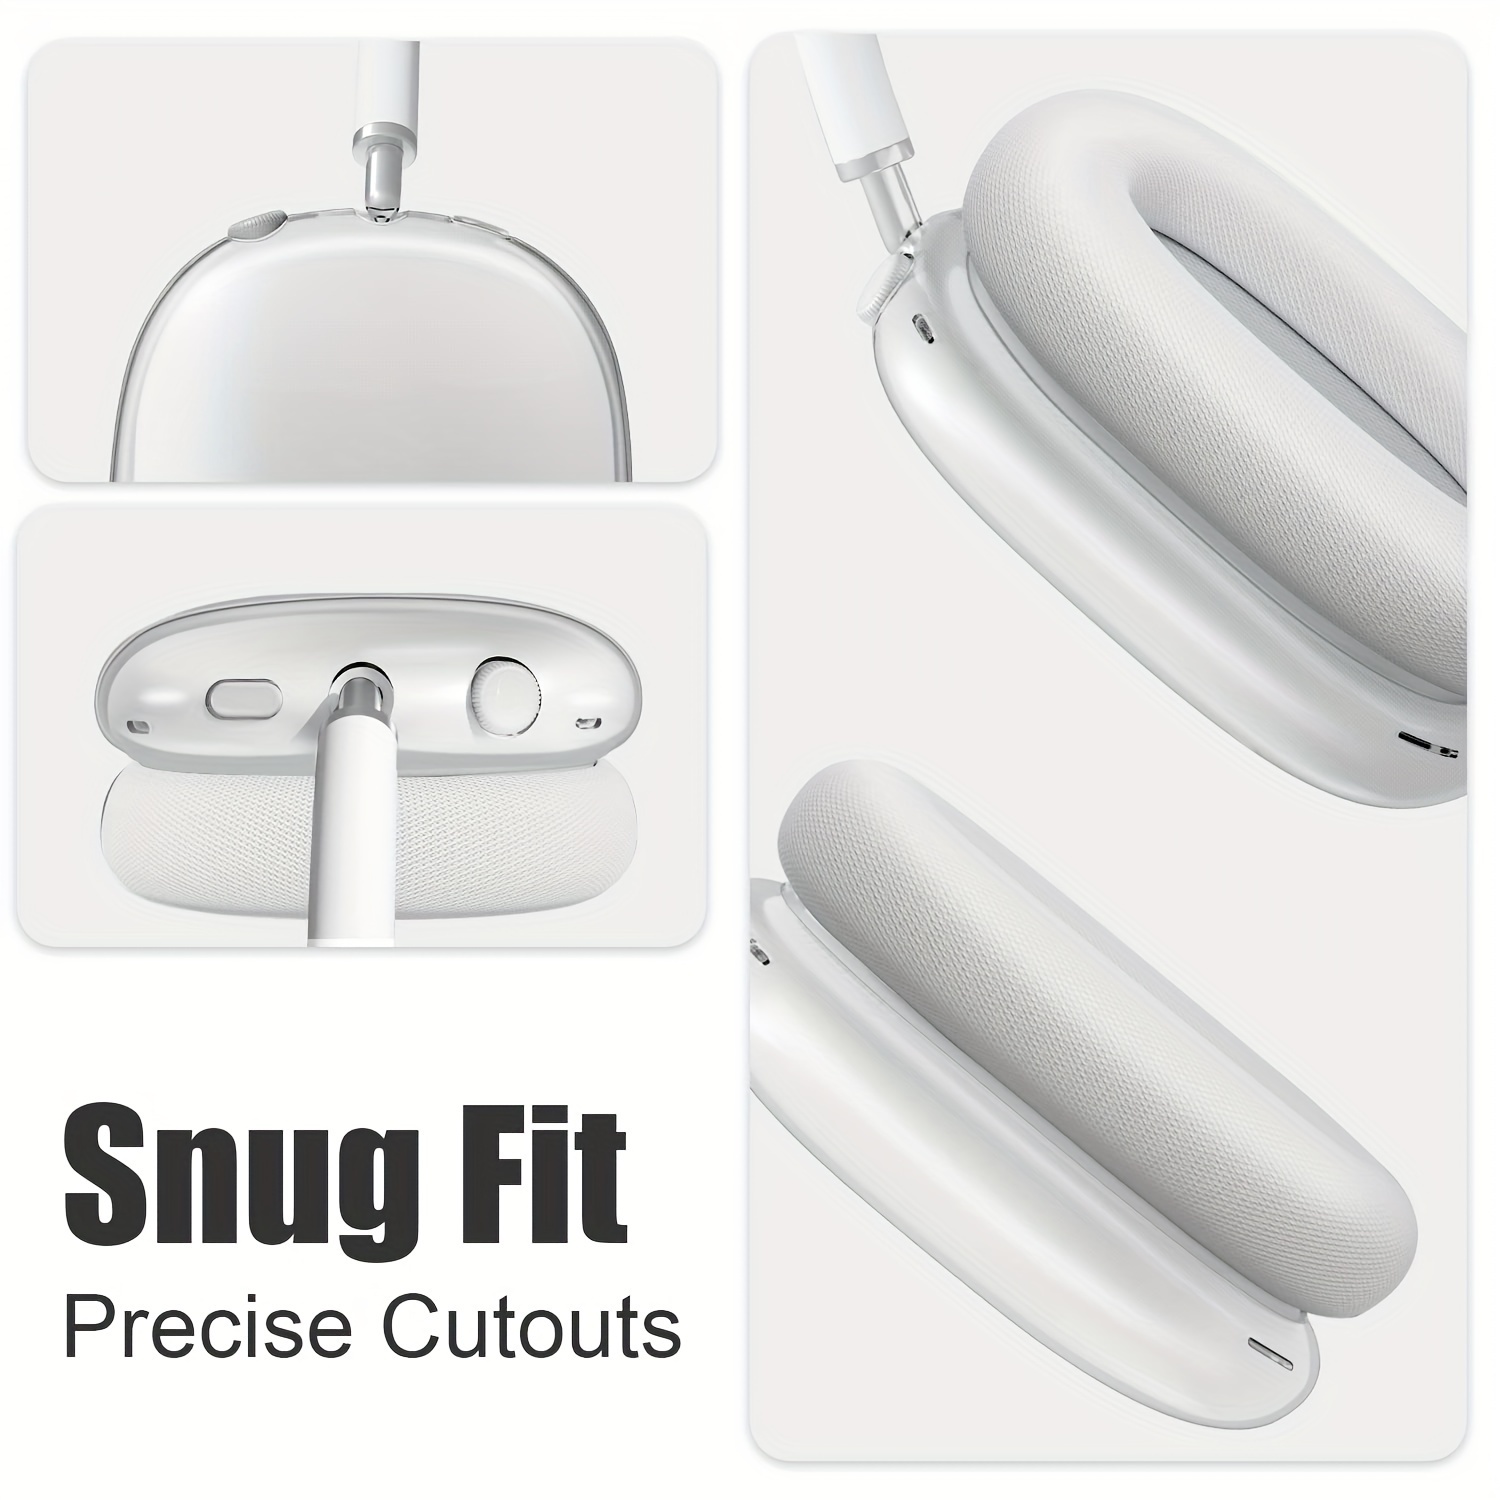 Case Cover for AirPods Max Headphones, Clear Soft TPU Skin Anti-Scratch,  Transparent Accessories Ultra Protective Cover for Apple AirPods Max,Clear